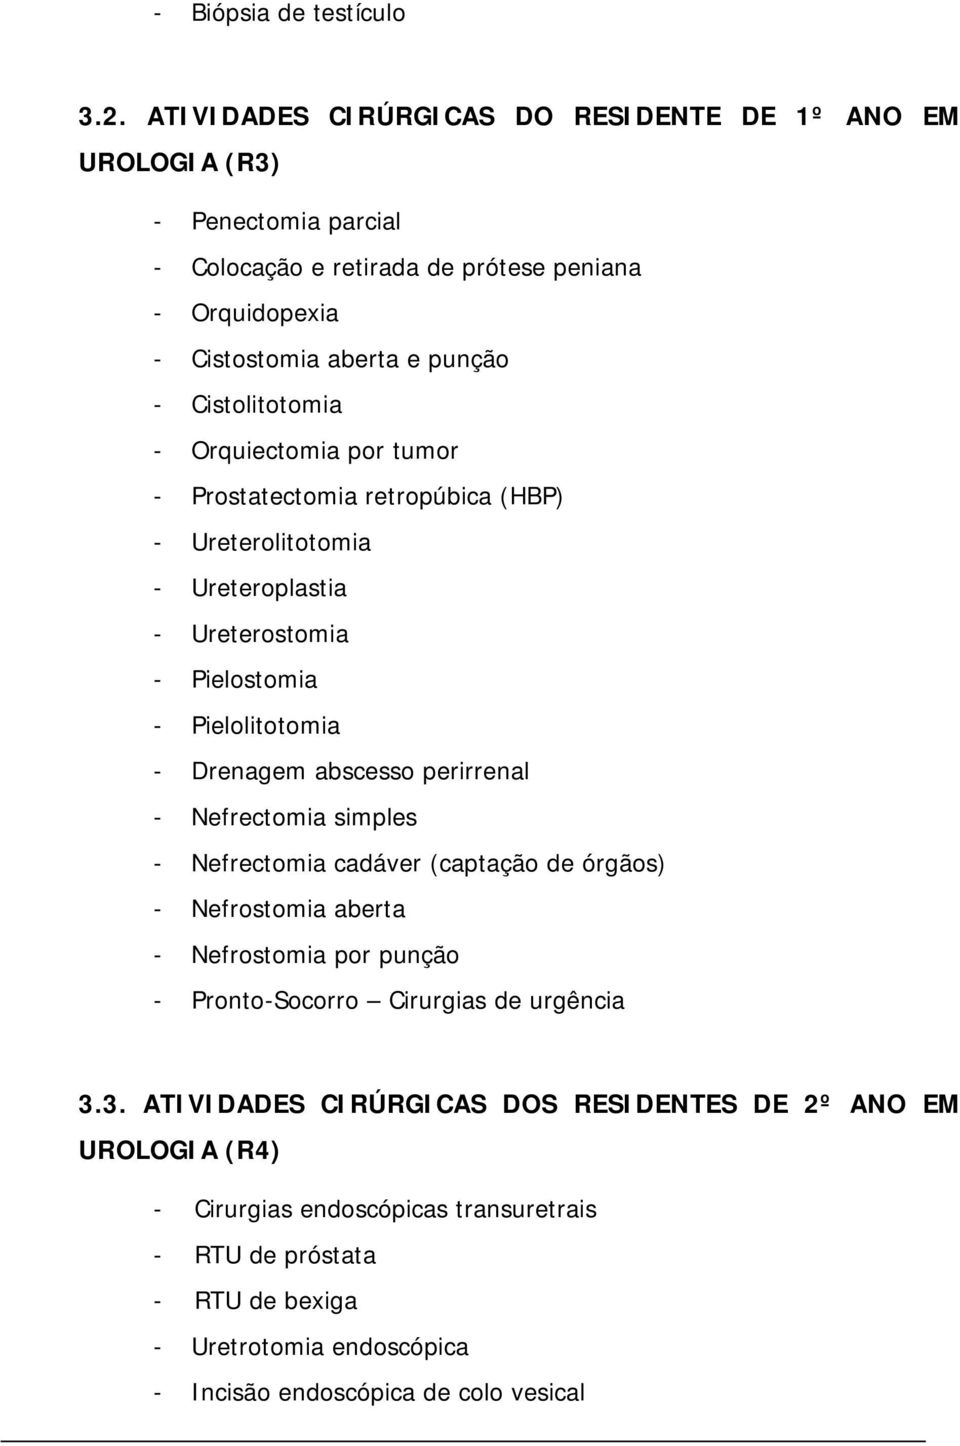 Cistolitotomia - Orquiectomia por tumor - Prostatectomia retropúbica (HBP) - Ureterolitotomia - Ureteroplastia - Ureterostomia - Pielostomia - Pielolitotomia - Drenagem abscesso